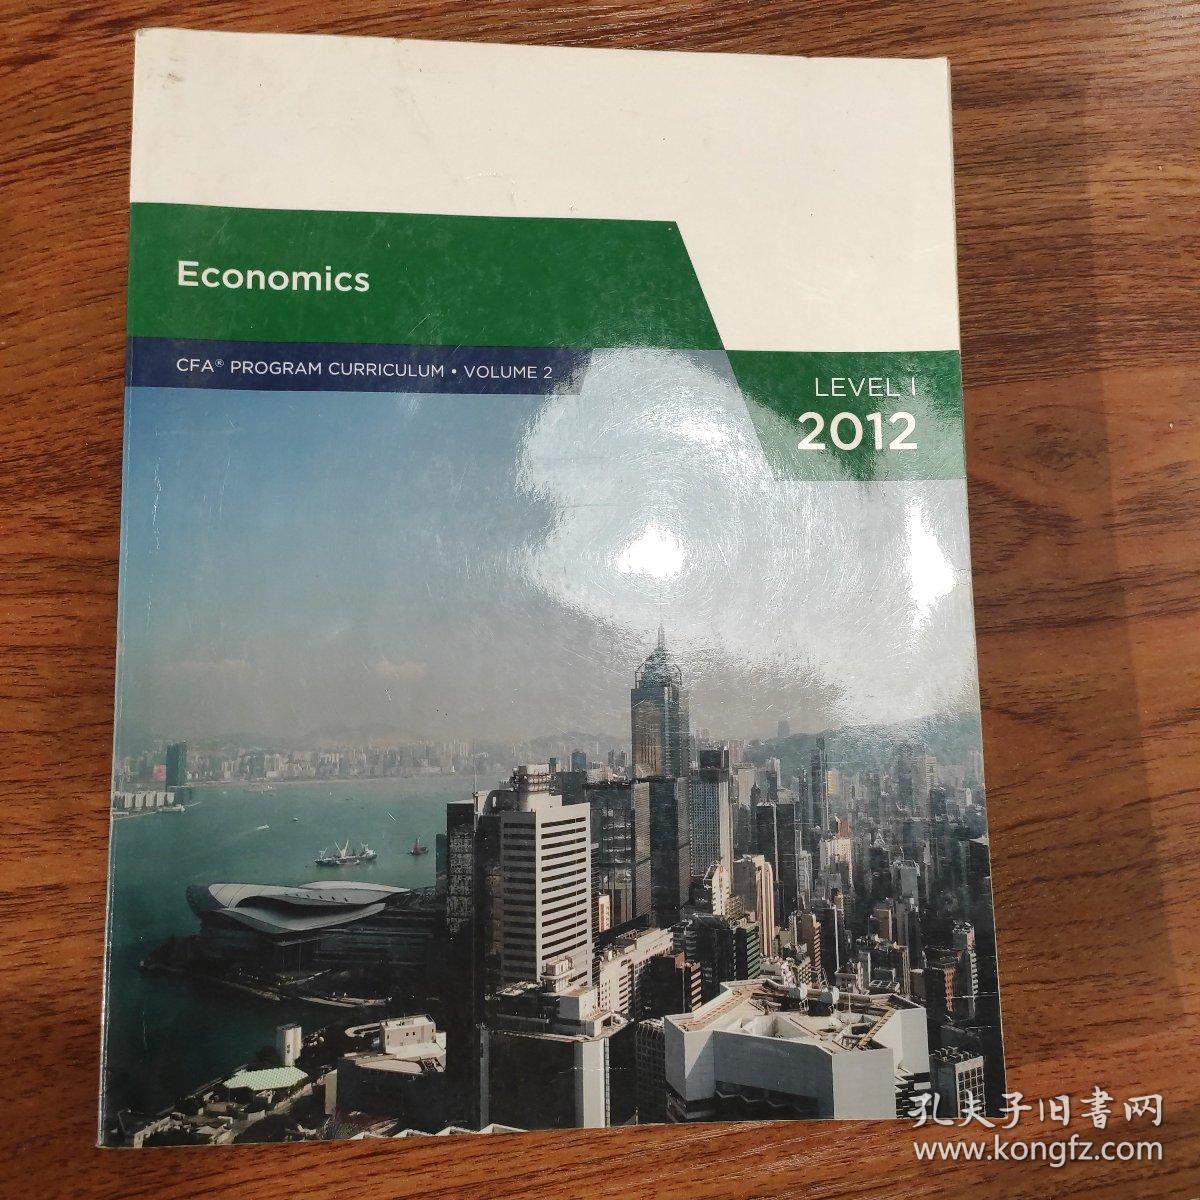 CFA curriculum 2012 level1: Economics